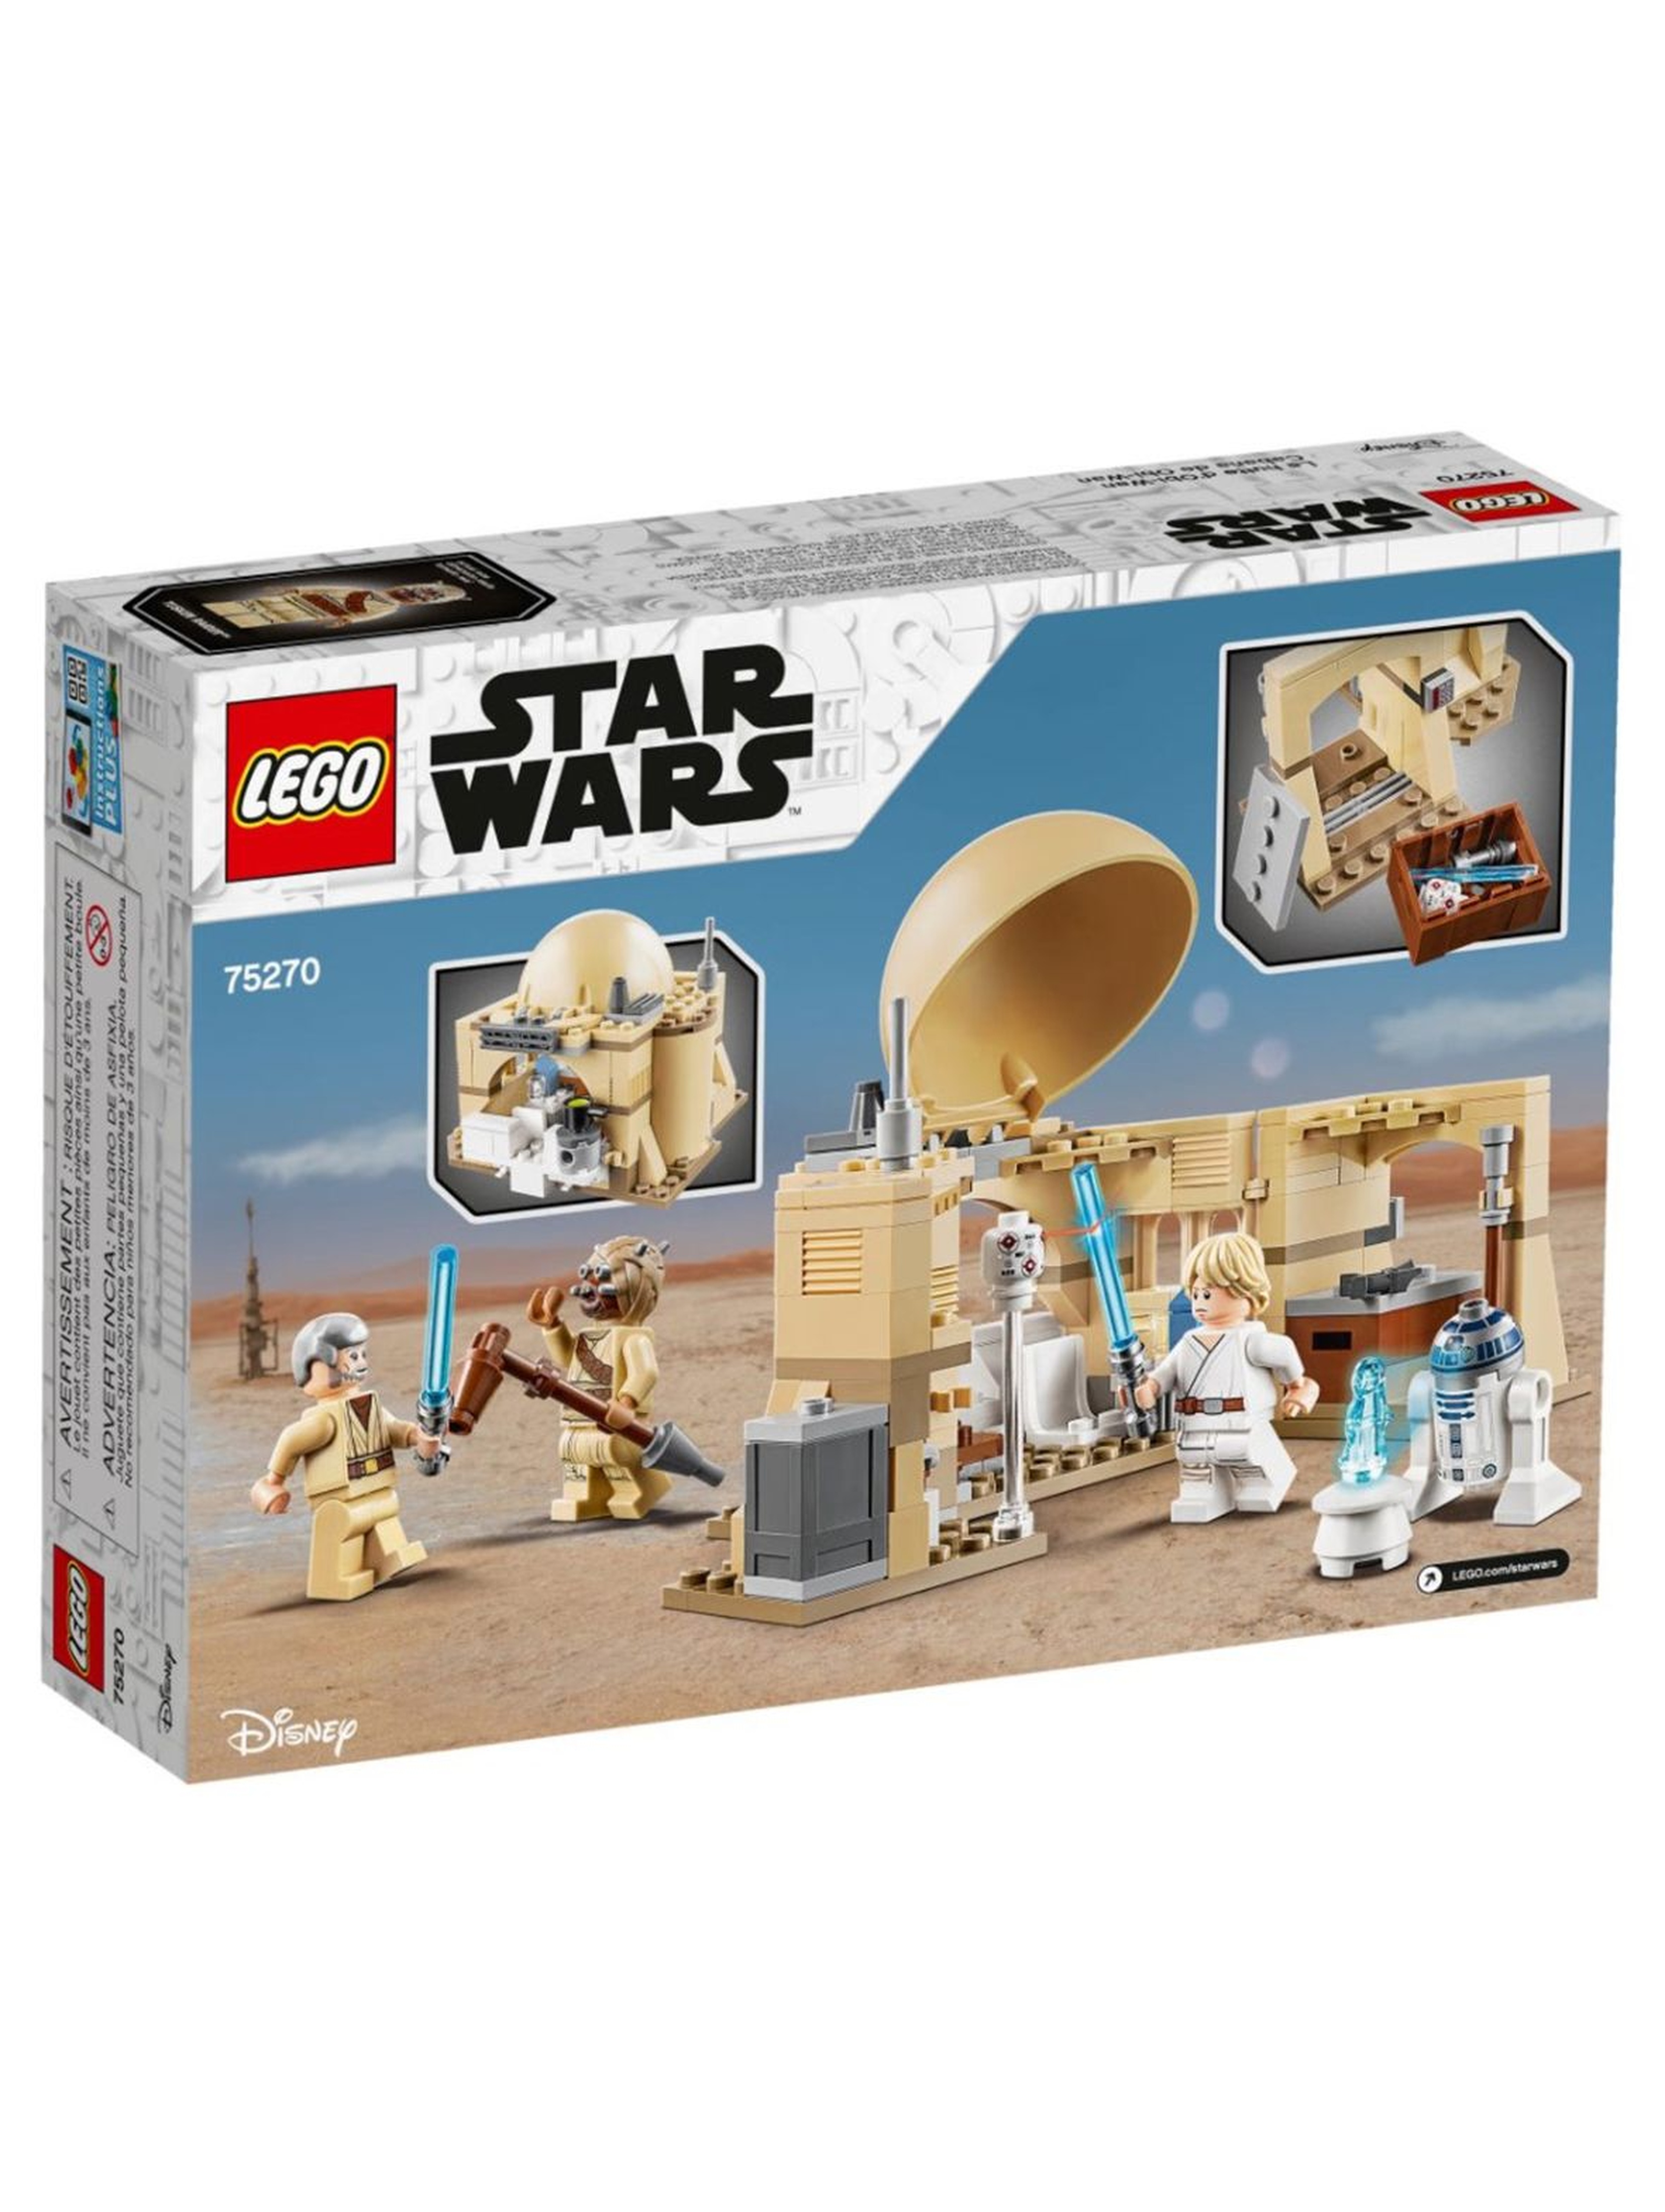 Lego Star Wars 75270 - Chatka Obi-Wana - 200 elementów wiek 7+